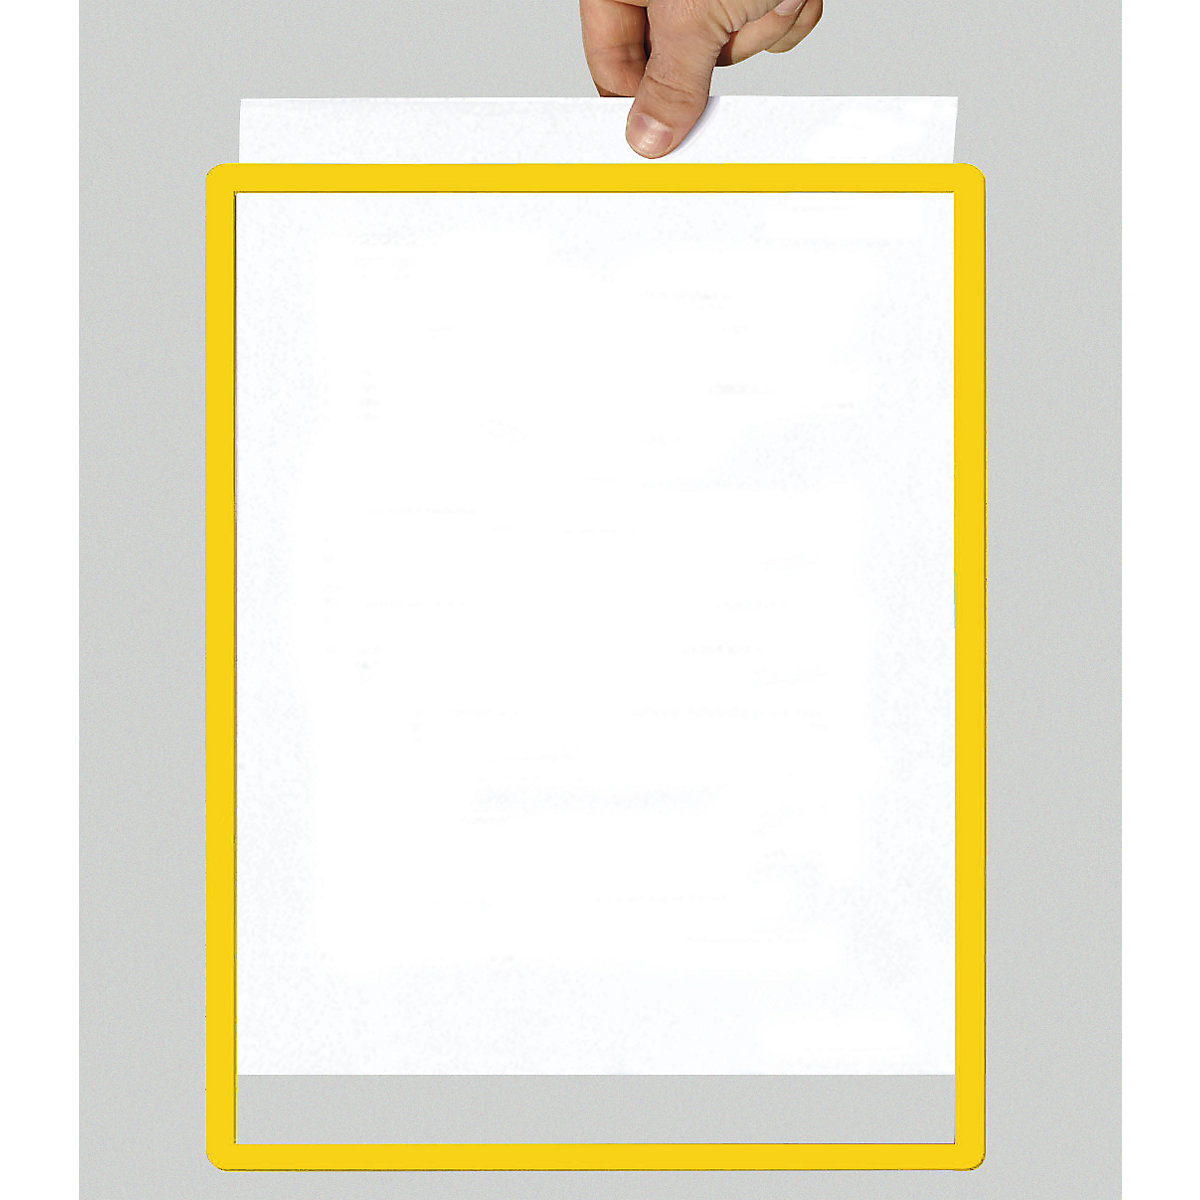 Caixilho com película transparente, papel com formato A4, embalagem de 10 unid., autocolante, amarelo-6